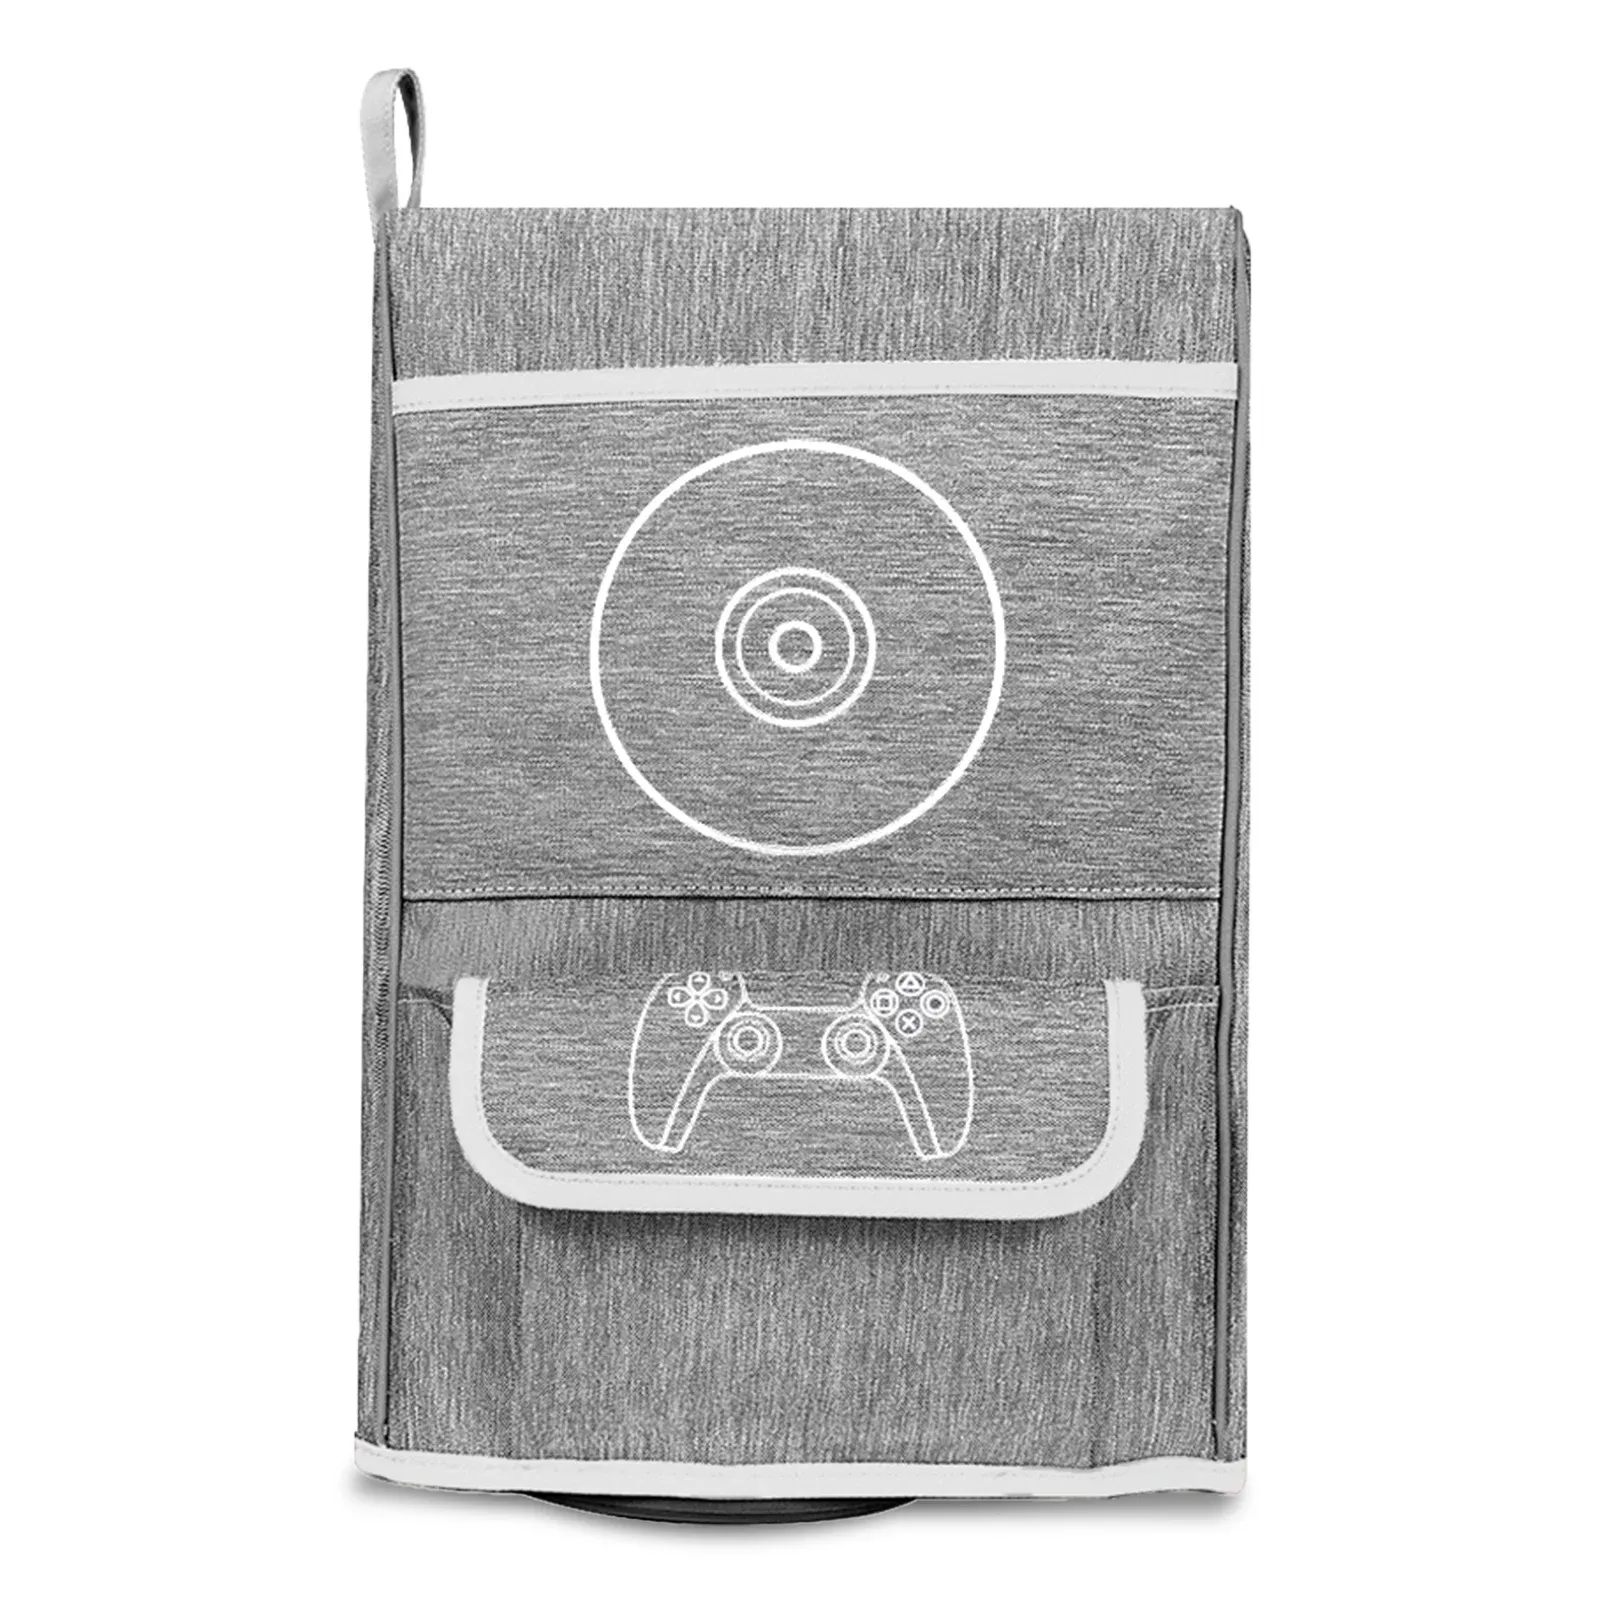 PS 5ダストカバーダストプルーフカバースリーブガードケース防水防止ゲーム防護アウターケーシングPS 5ゲームのバッグ